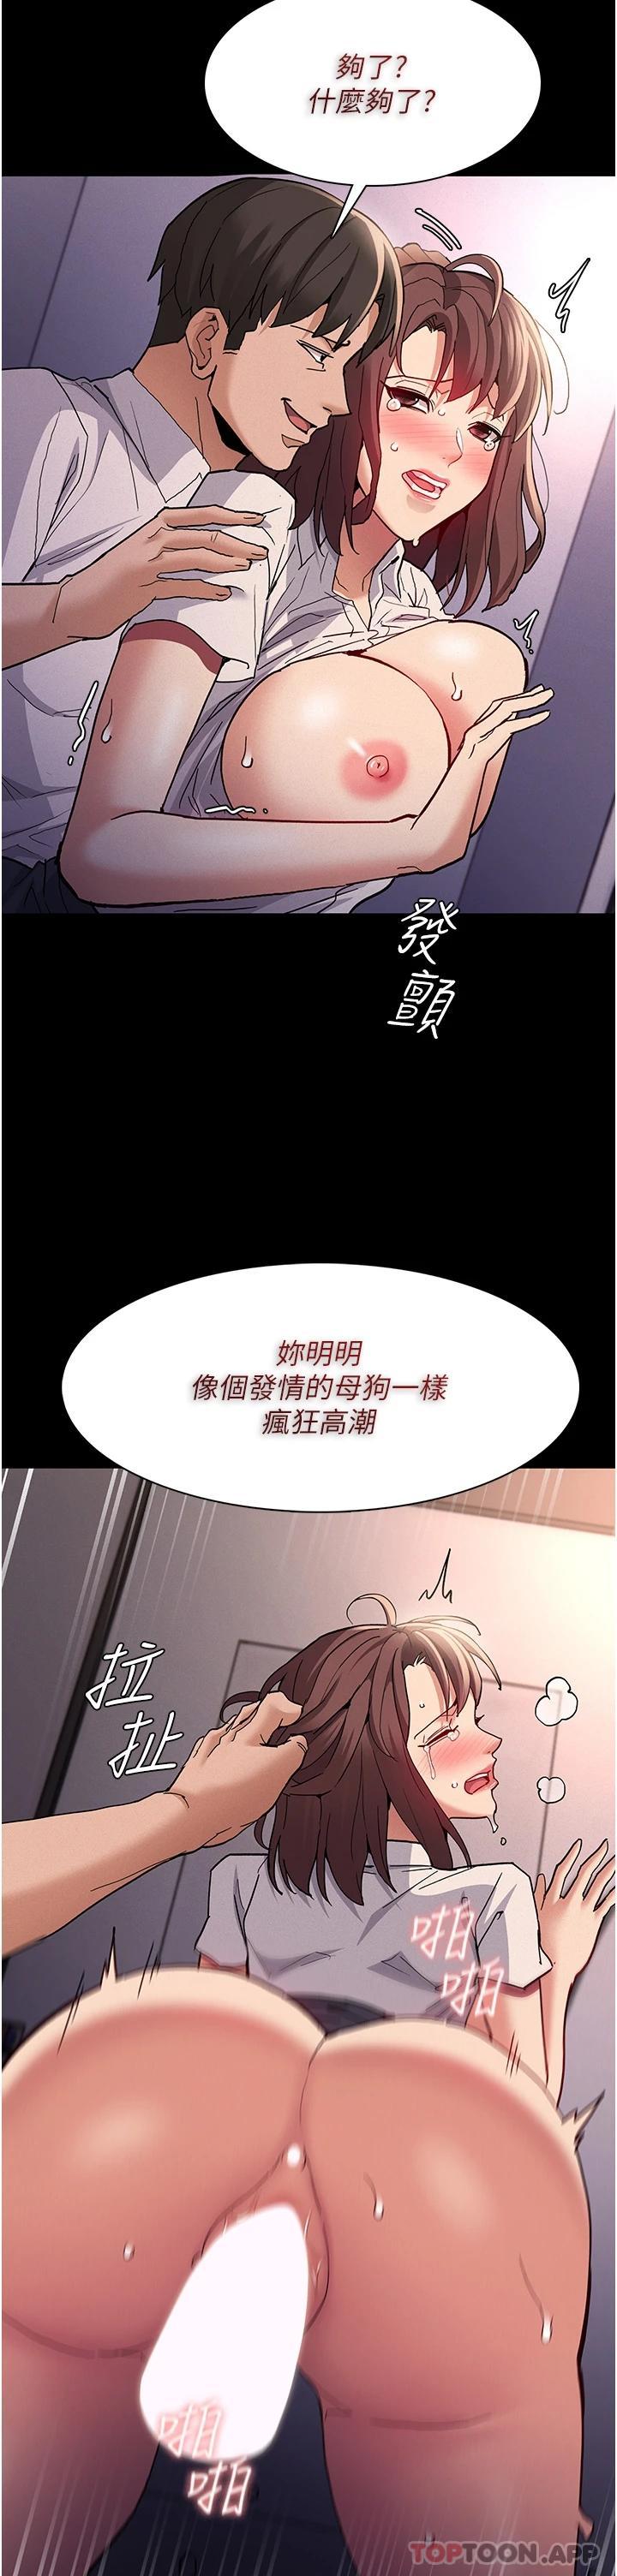 韩国污漫画 癡漢成癮 第26话-被主人抛弃的母狗 9